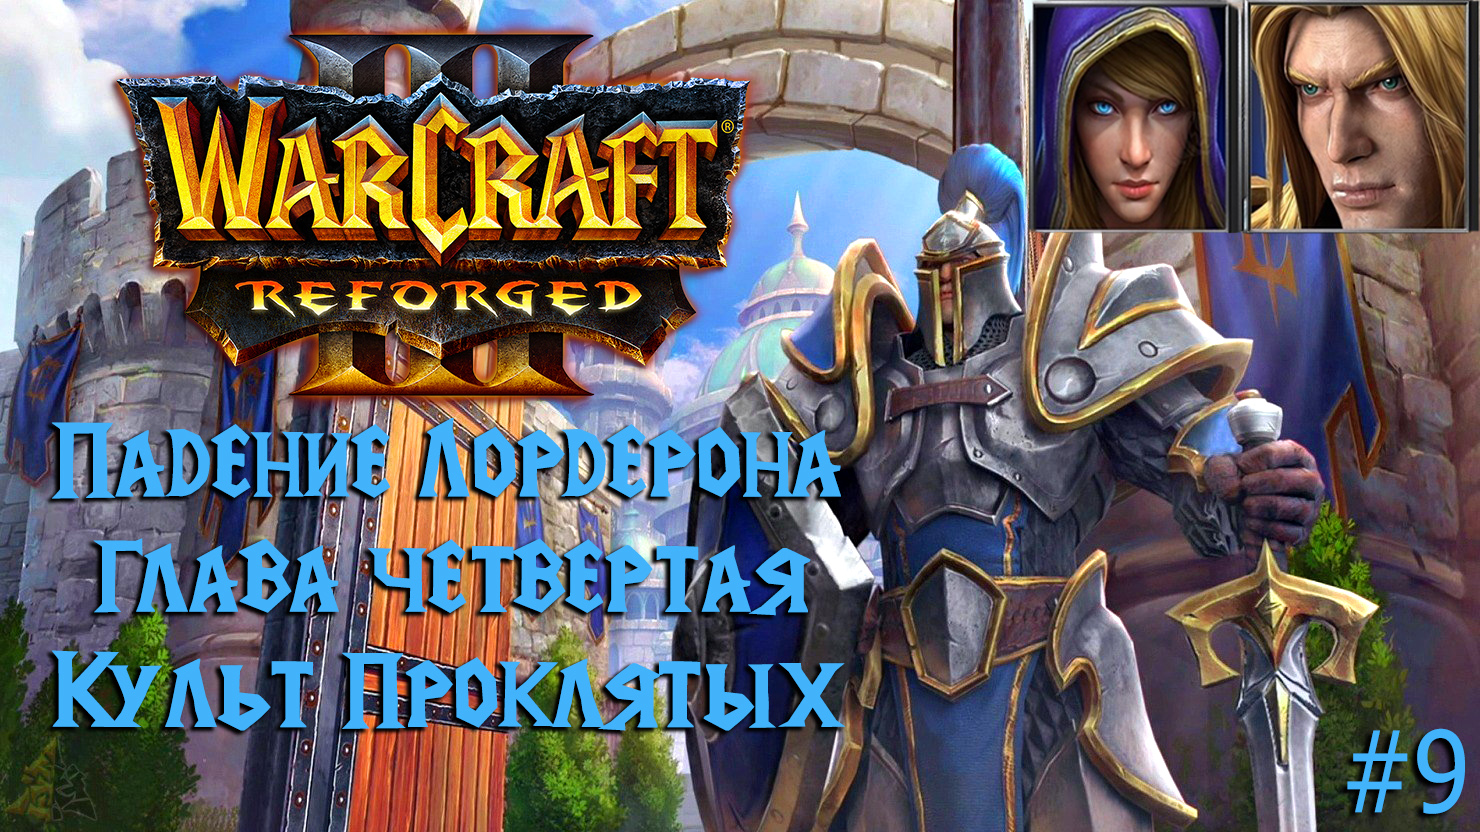 Warcraft III: Reforged | Падение Лордерона | Глава четвертая | Культ проклятых | #9